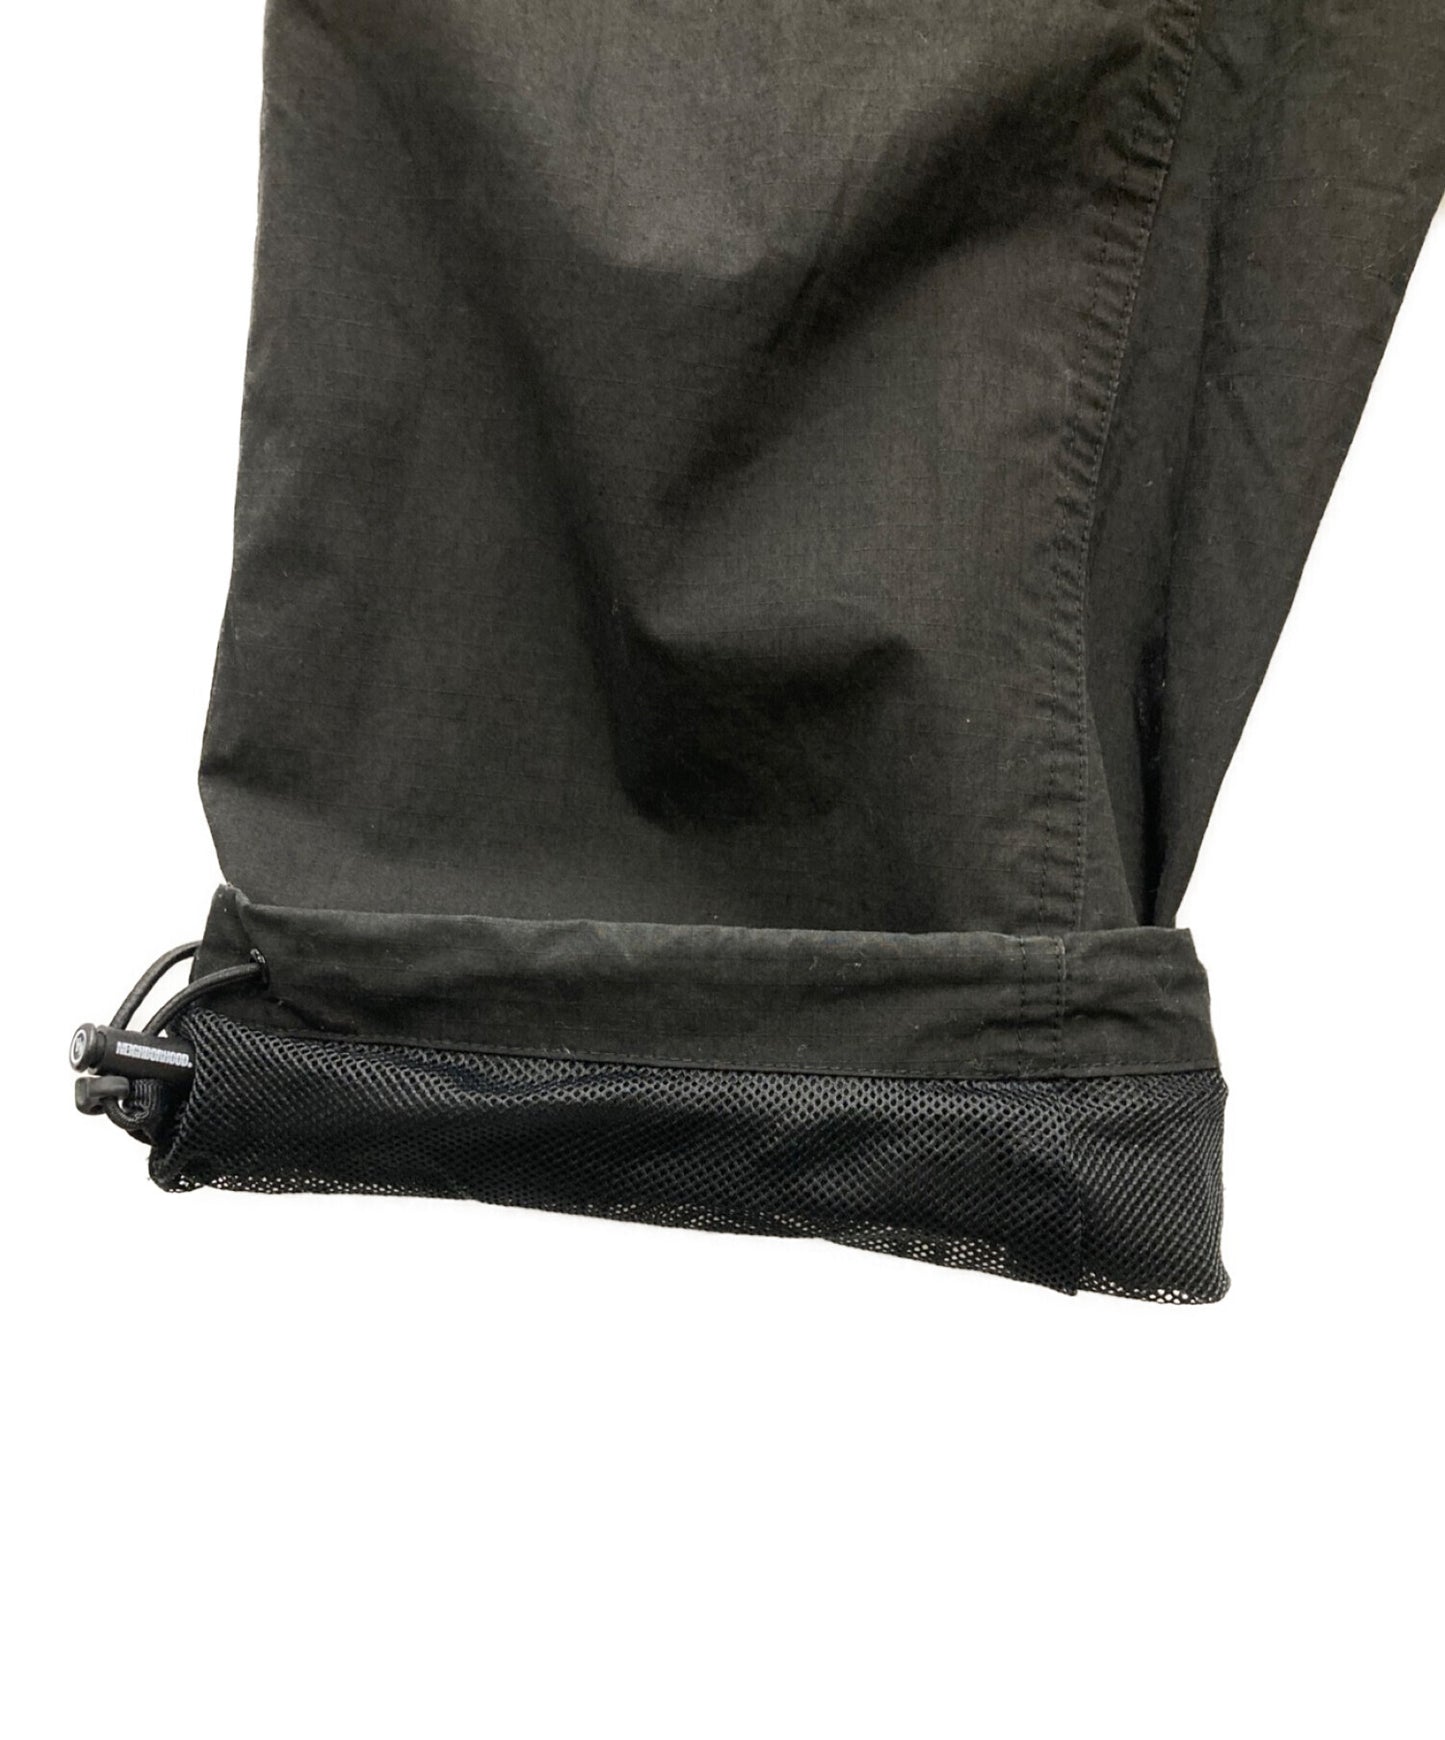 [Pre-owned] NEIGHBORHOOD MAUKA/N-PT Nylon pants Cargo pants 212TSNH-PTM02